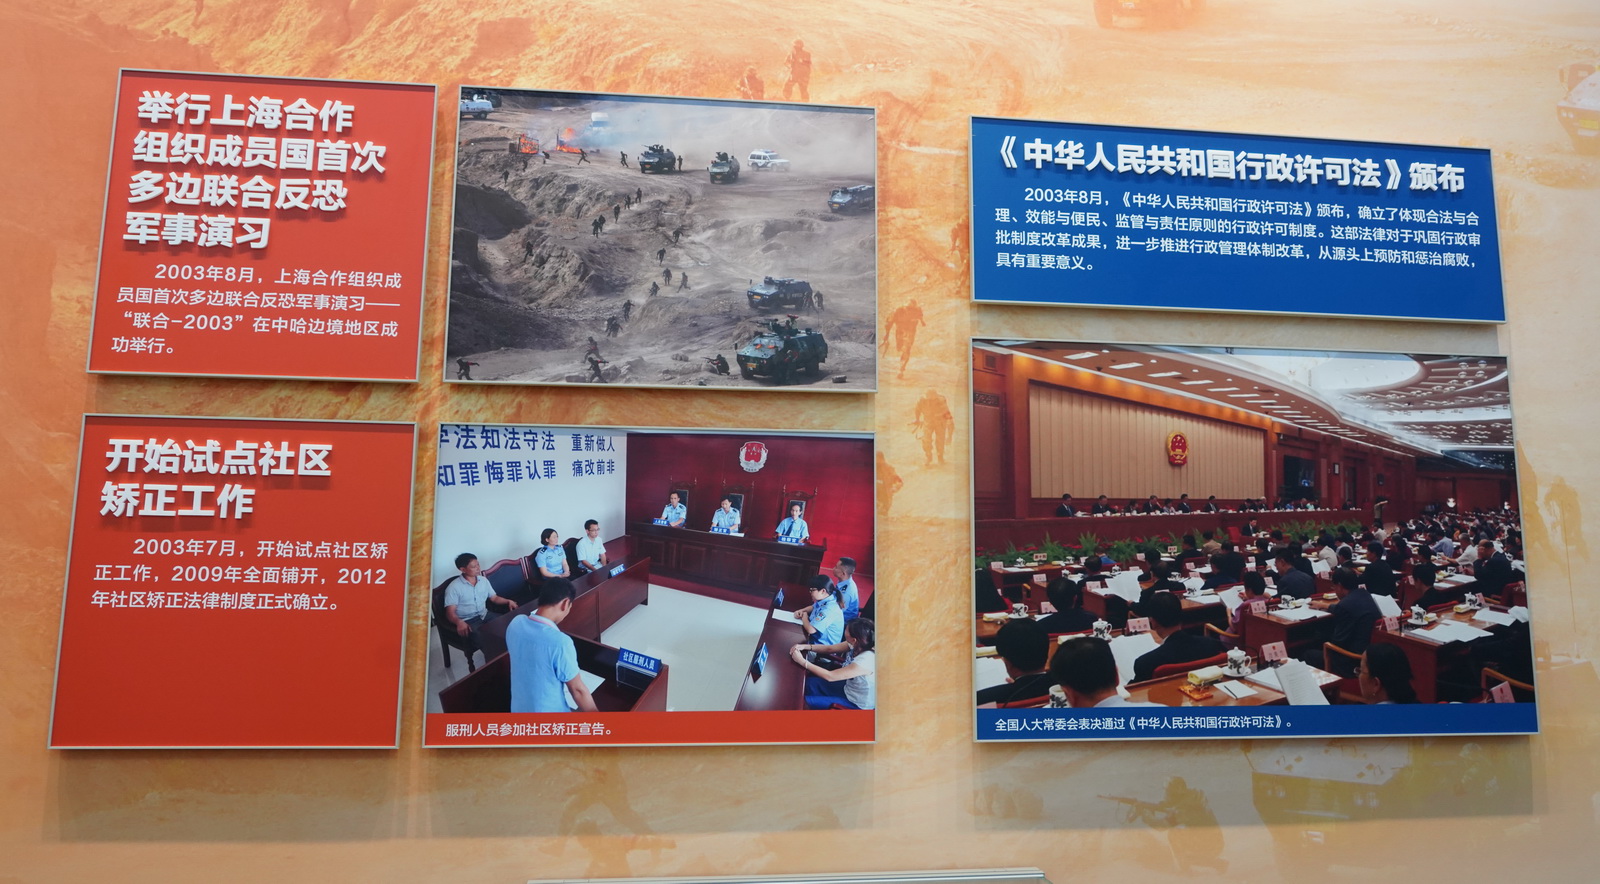 舉行上海合作組織成員國首次多邊聯合反恐軍事演習﹔《中華人民共和國行政許可法》頒布﹔開始試點社區矯正工作。